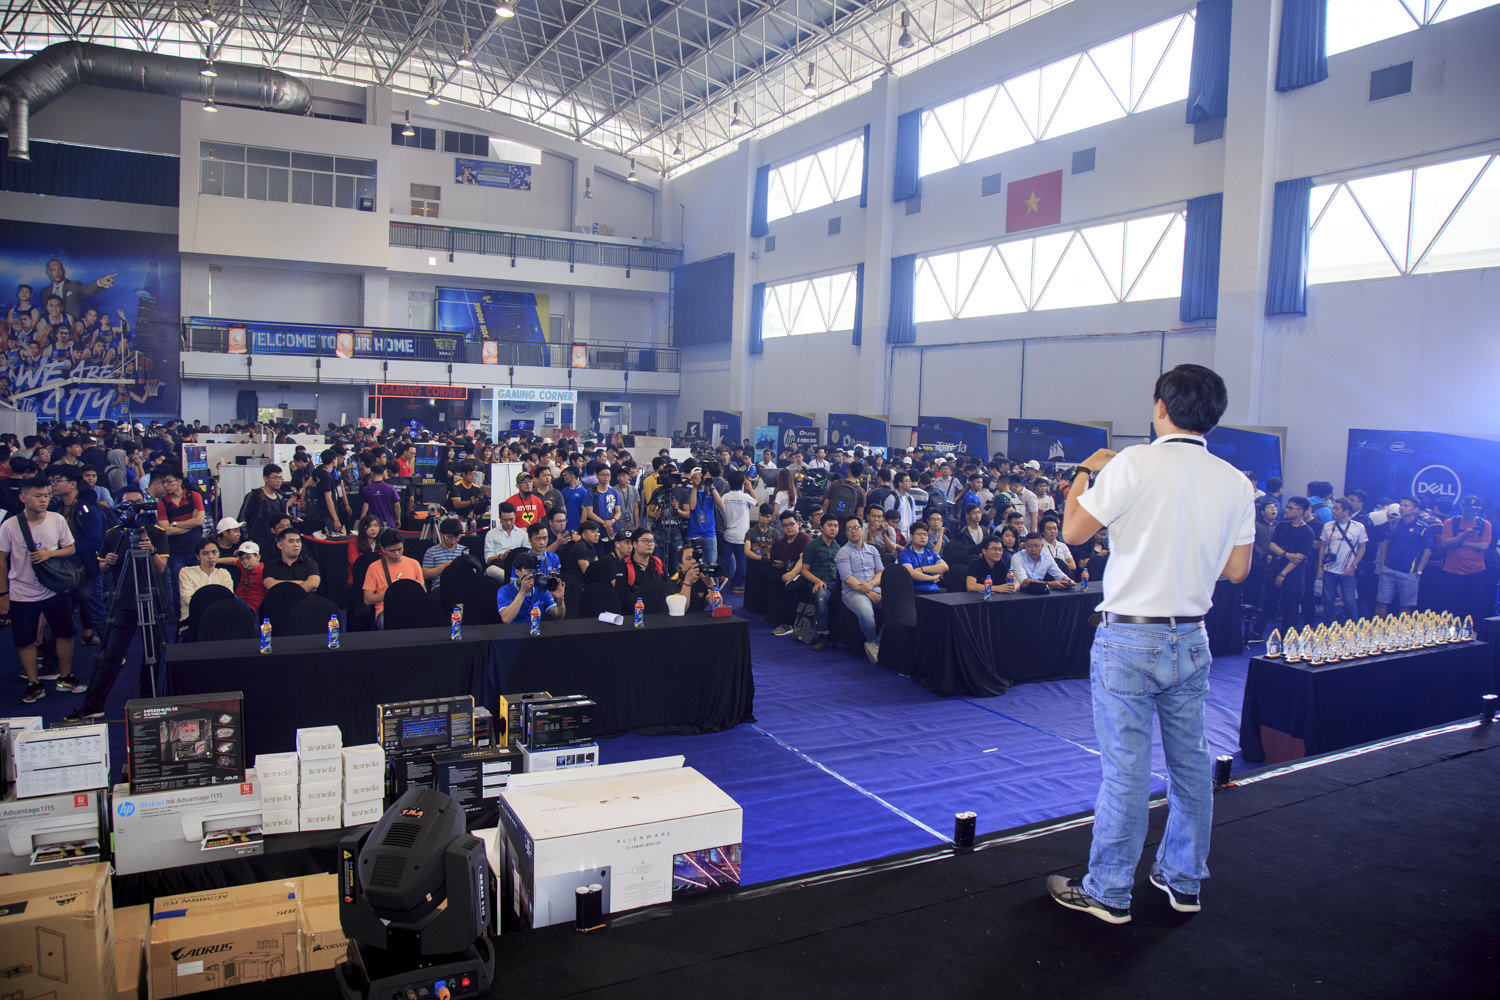 Nhìn lại những hình ảnh sôi động từ Lễ hội trình diễn máy tính lớn nhất Việt Nam – Extreme PC Master mùa 5